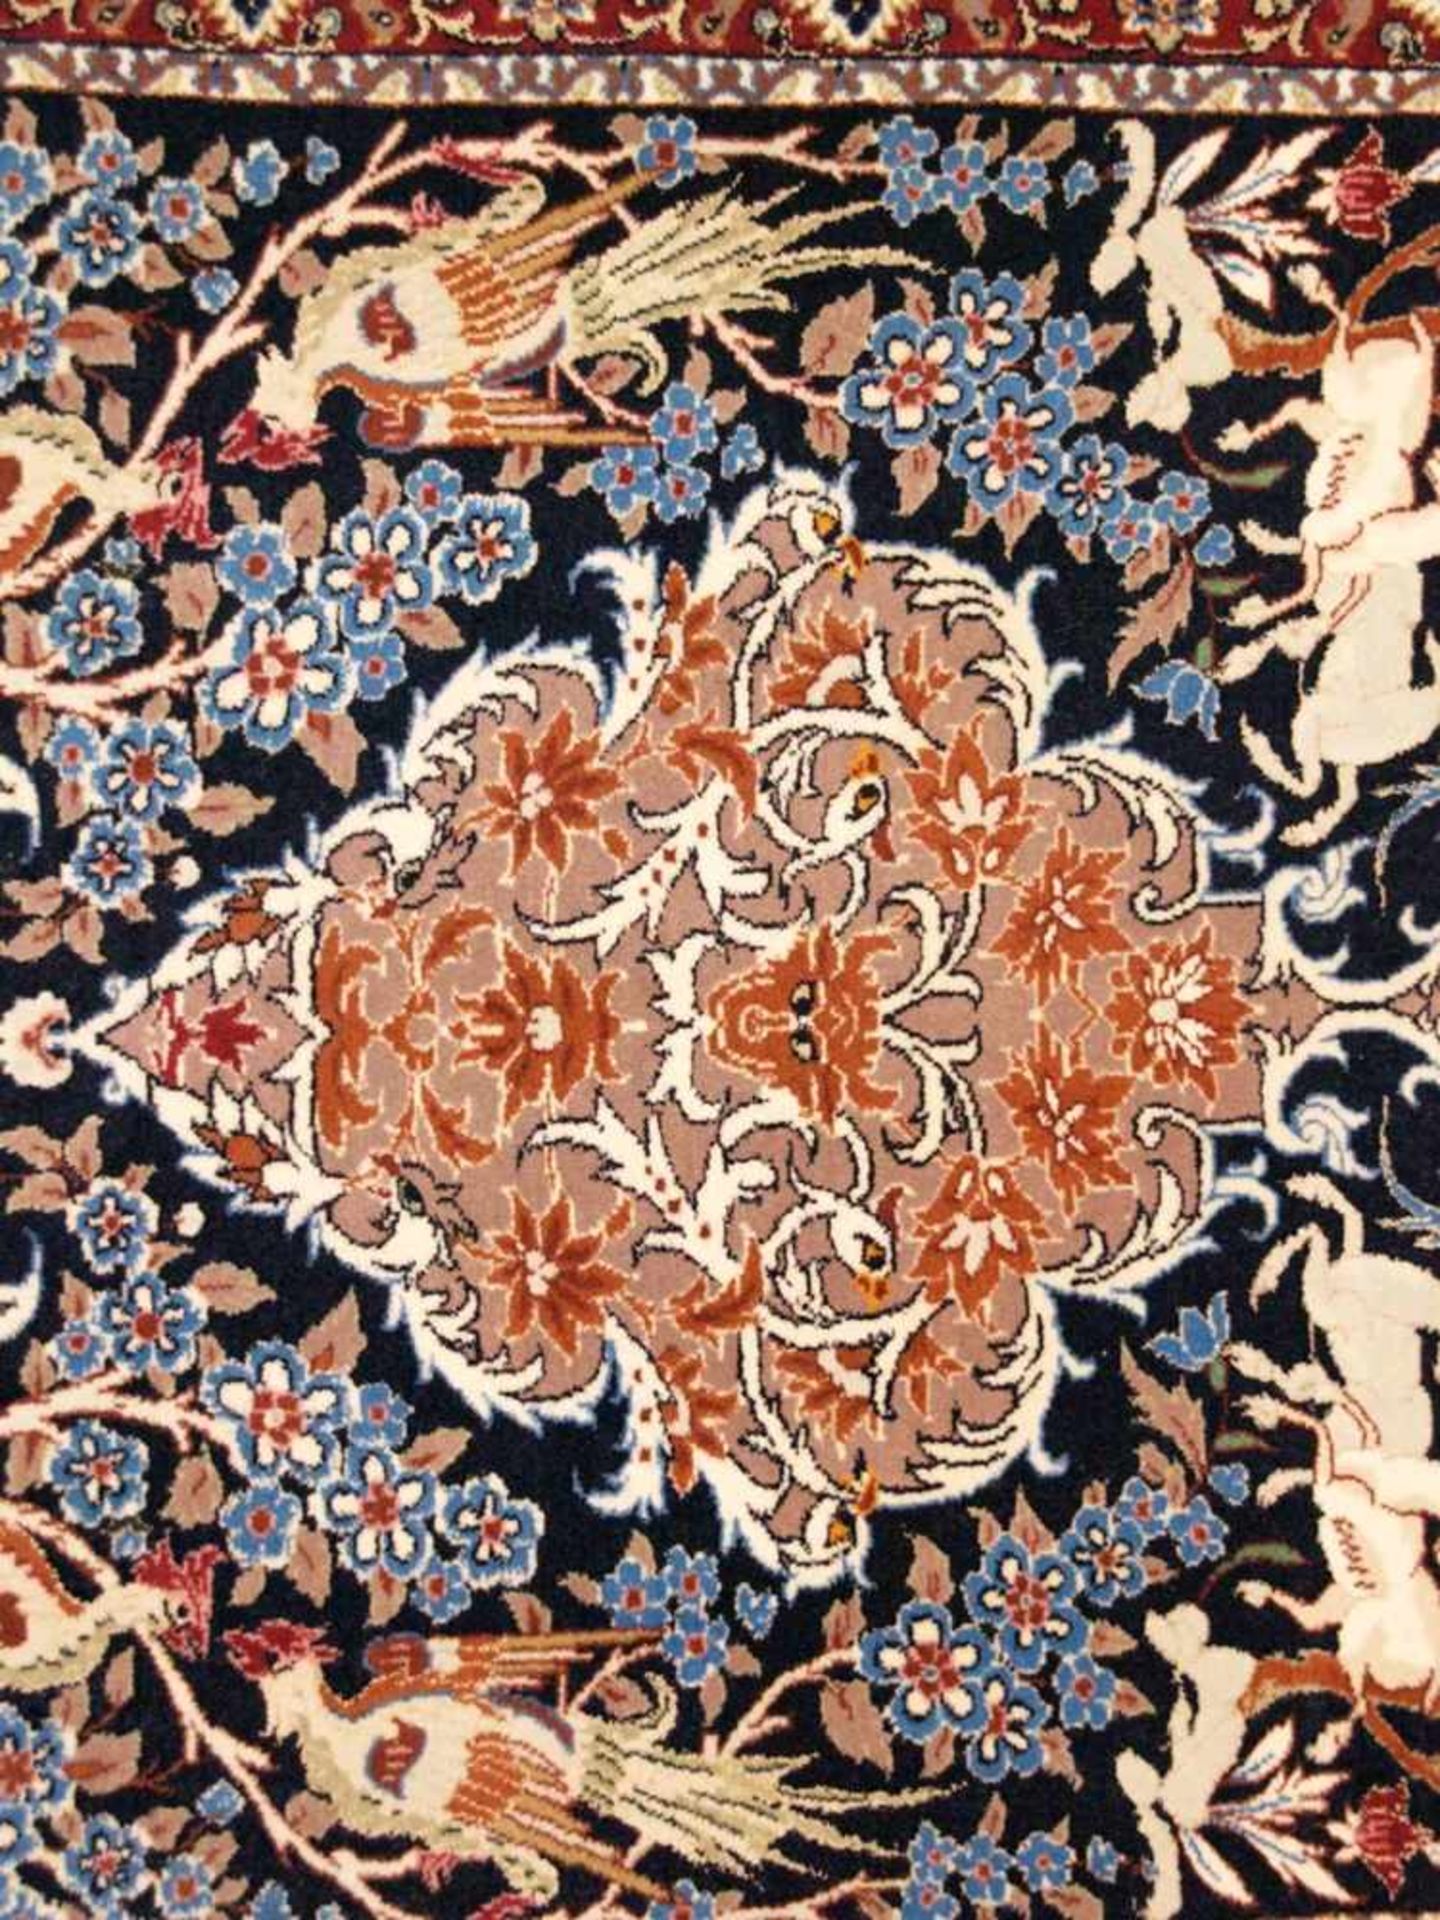 Orientteppich - Wolle und Seide, blaugrundig, zentrale florale Kartusche, gerahmt von Vögeln, - Bild 7 aus 11